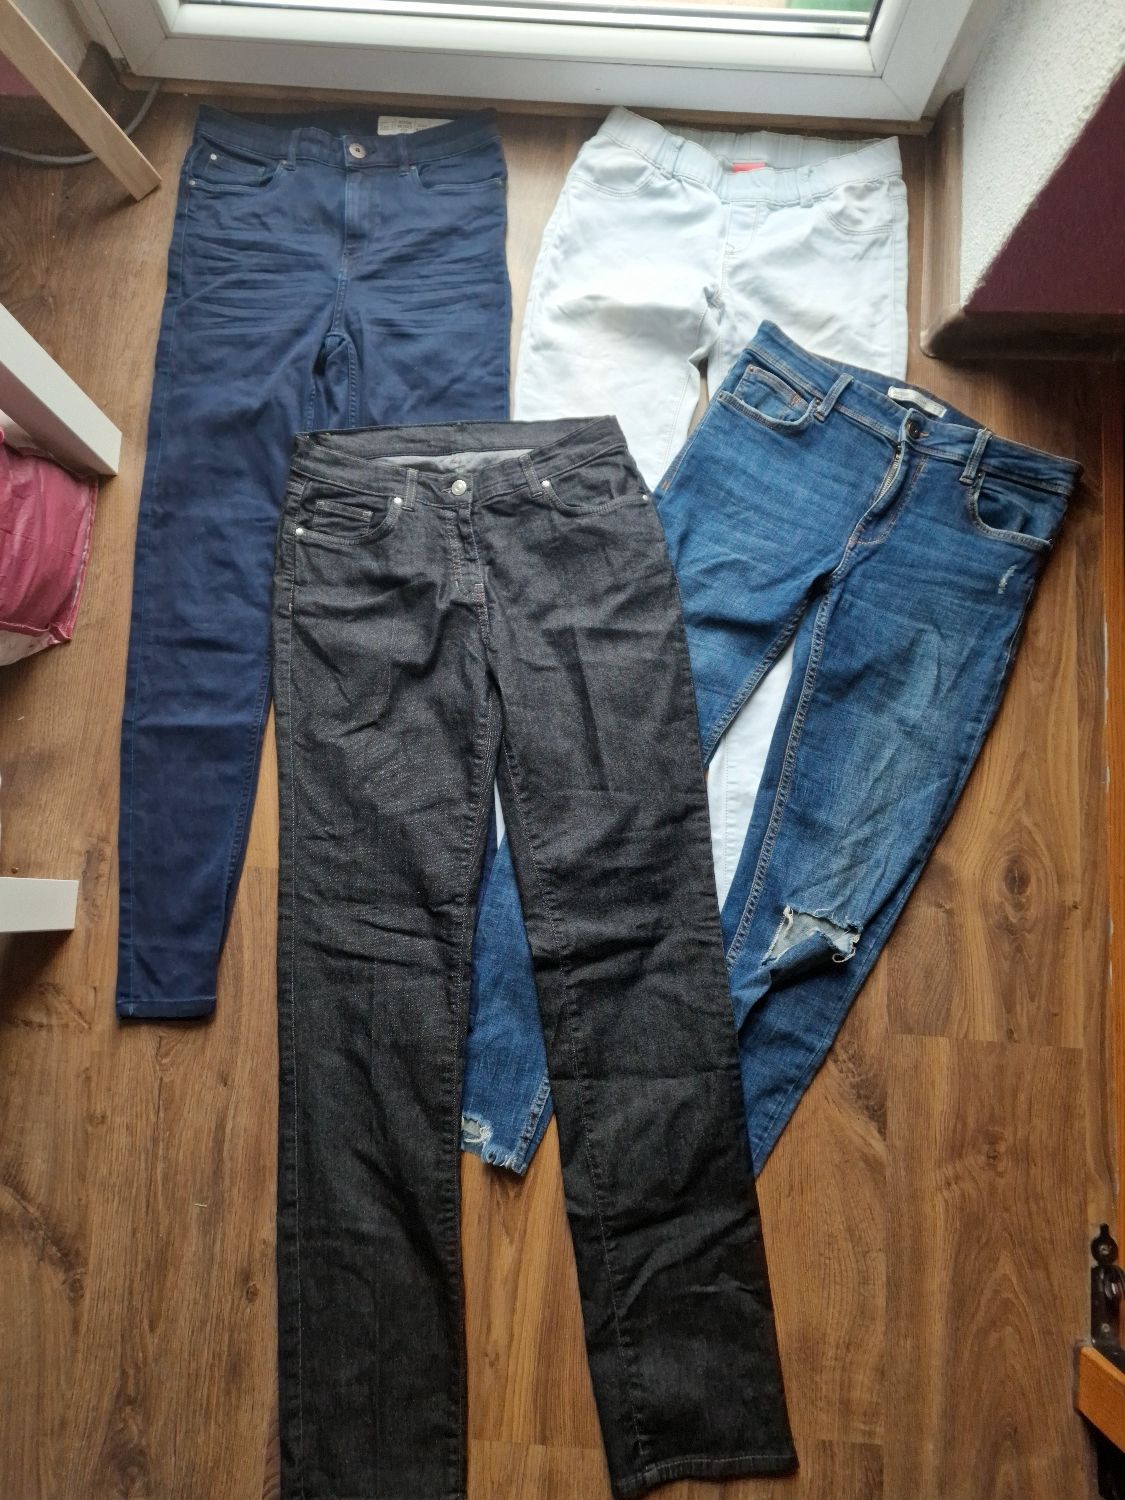 Zestaw spodni damskich paka ubrań jeansy rurki proste spodnie